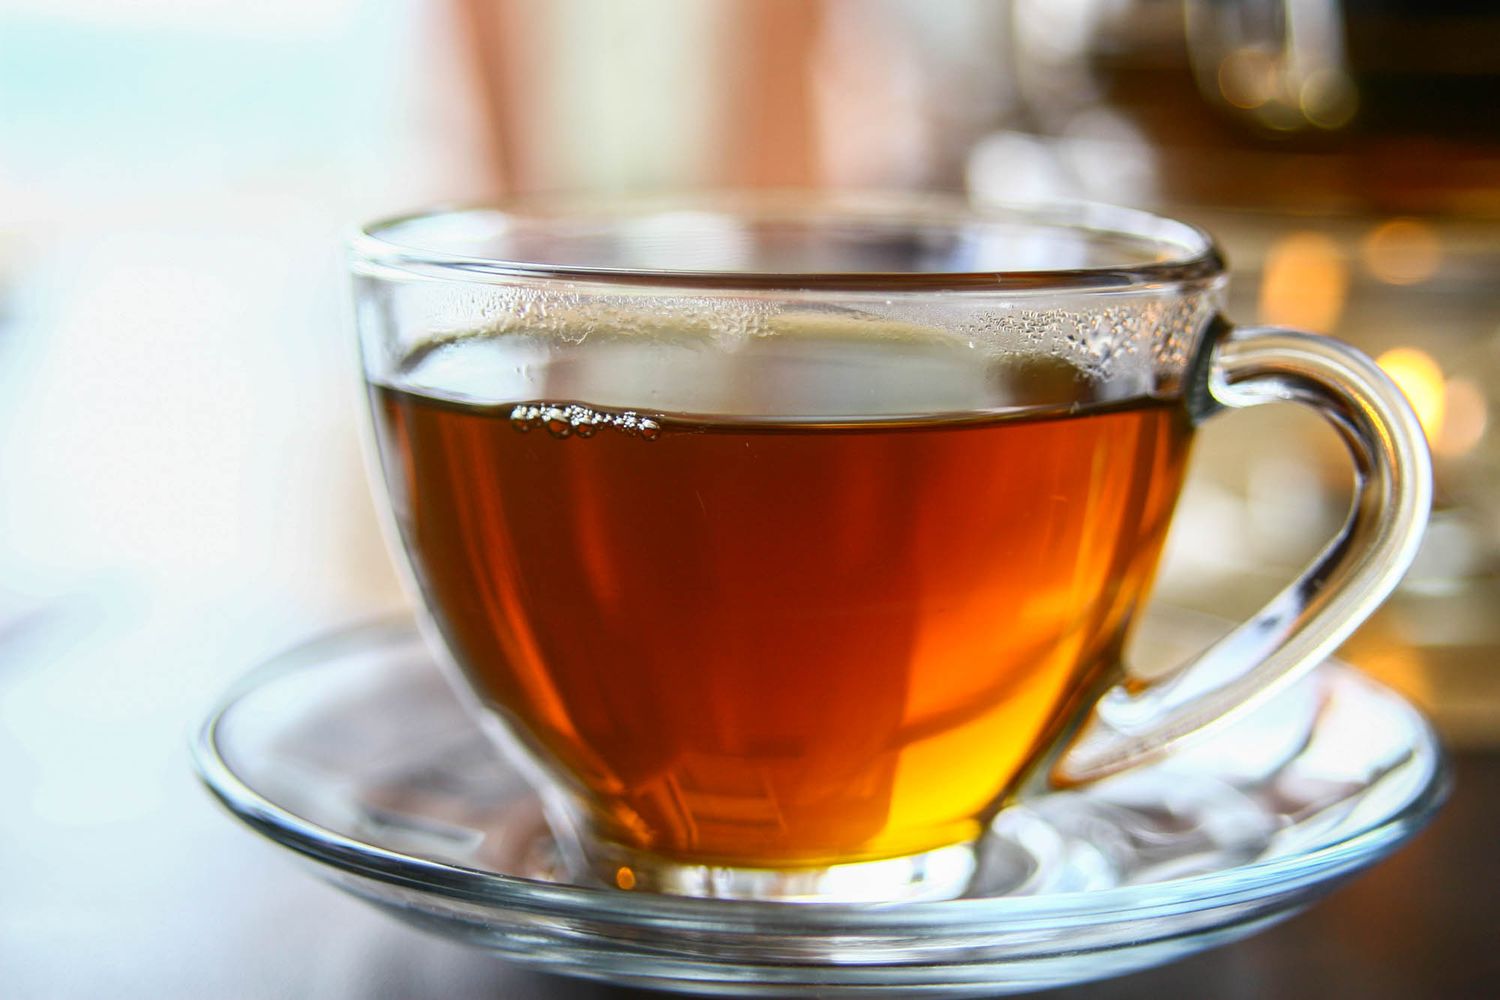 شرب 3 أكواب من الشاي قد يبطئ الشيخوخة